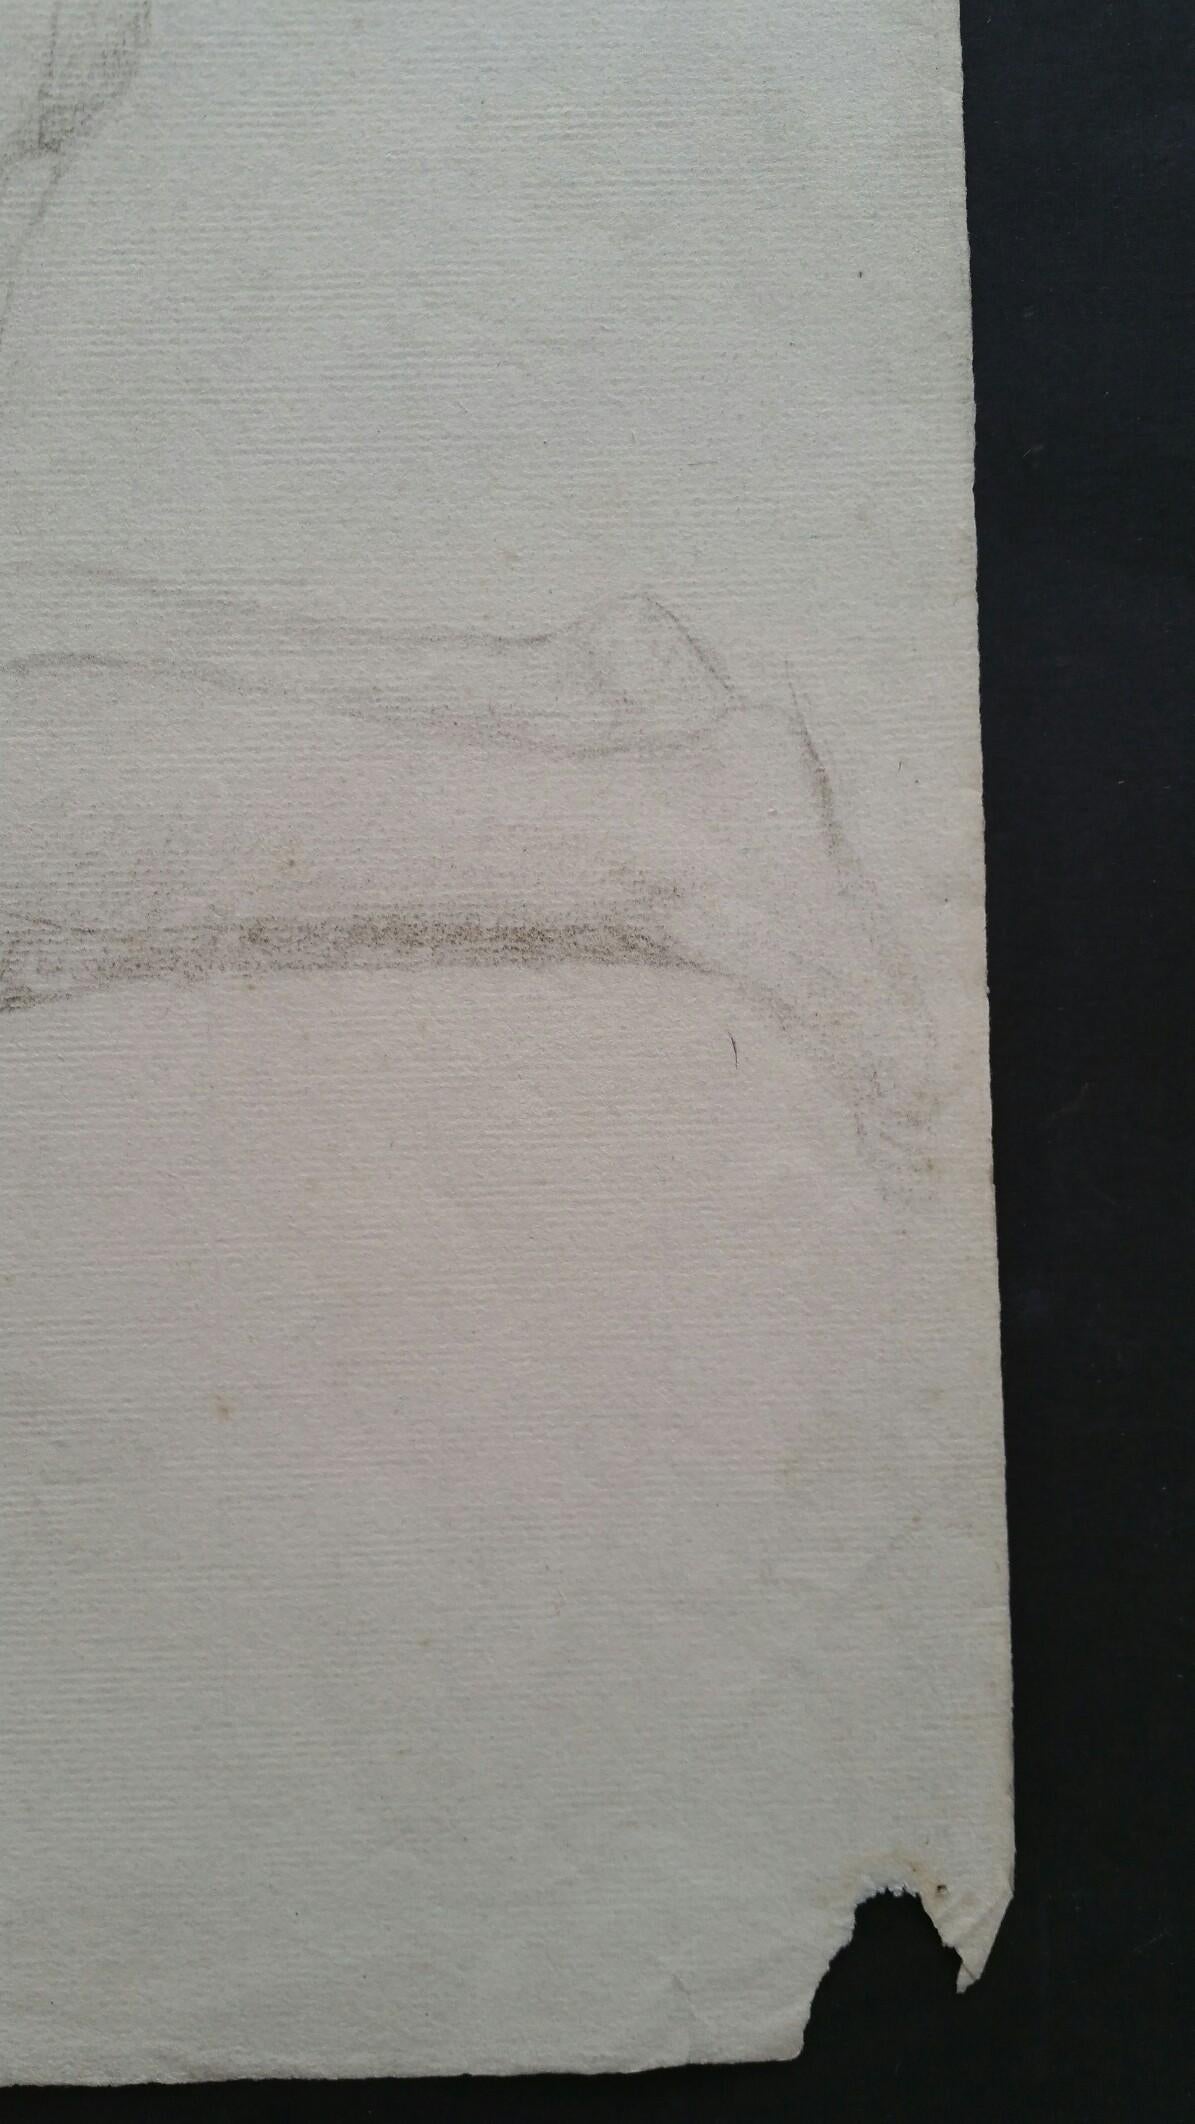 Esquisse au graphite d'une femme nue, agenouillée, en anglais
par Henry George Moon (britannique, 1857-1905)
sur papier d'artiste blanc cassé, non encadré
mesures : feuille 18.75 x 12 pouces 

provenance : de la succession de l'artiste

Rapport de